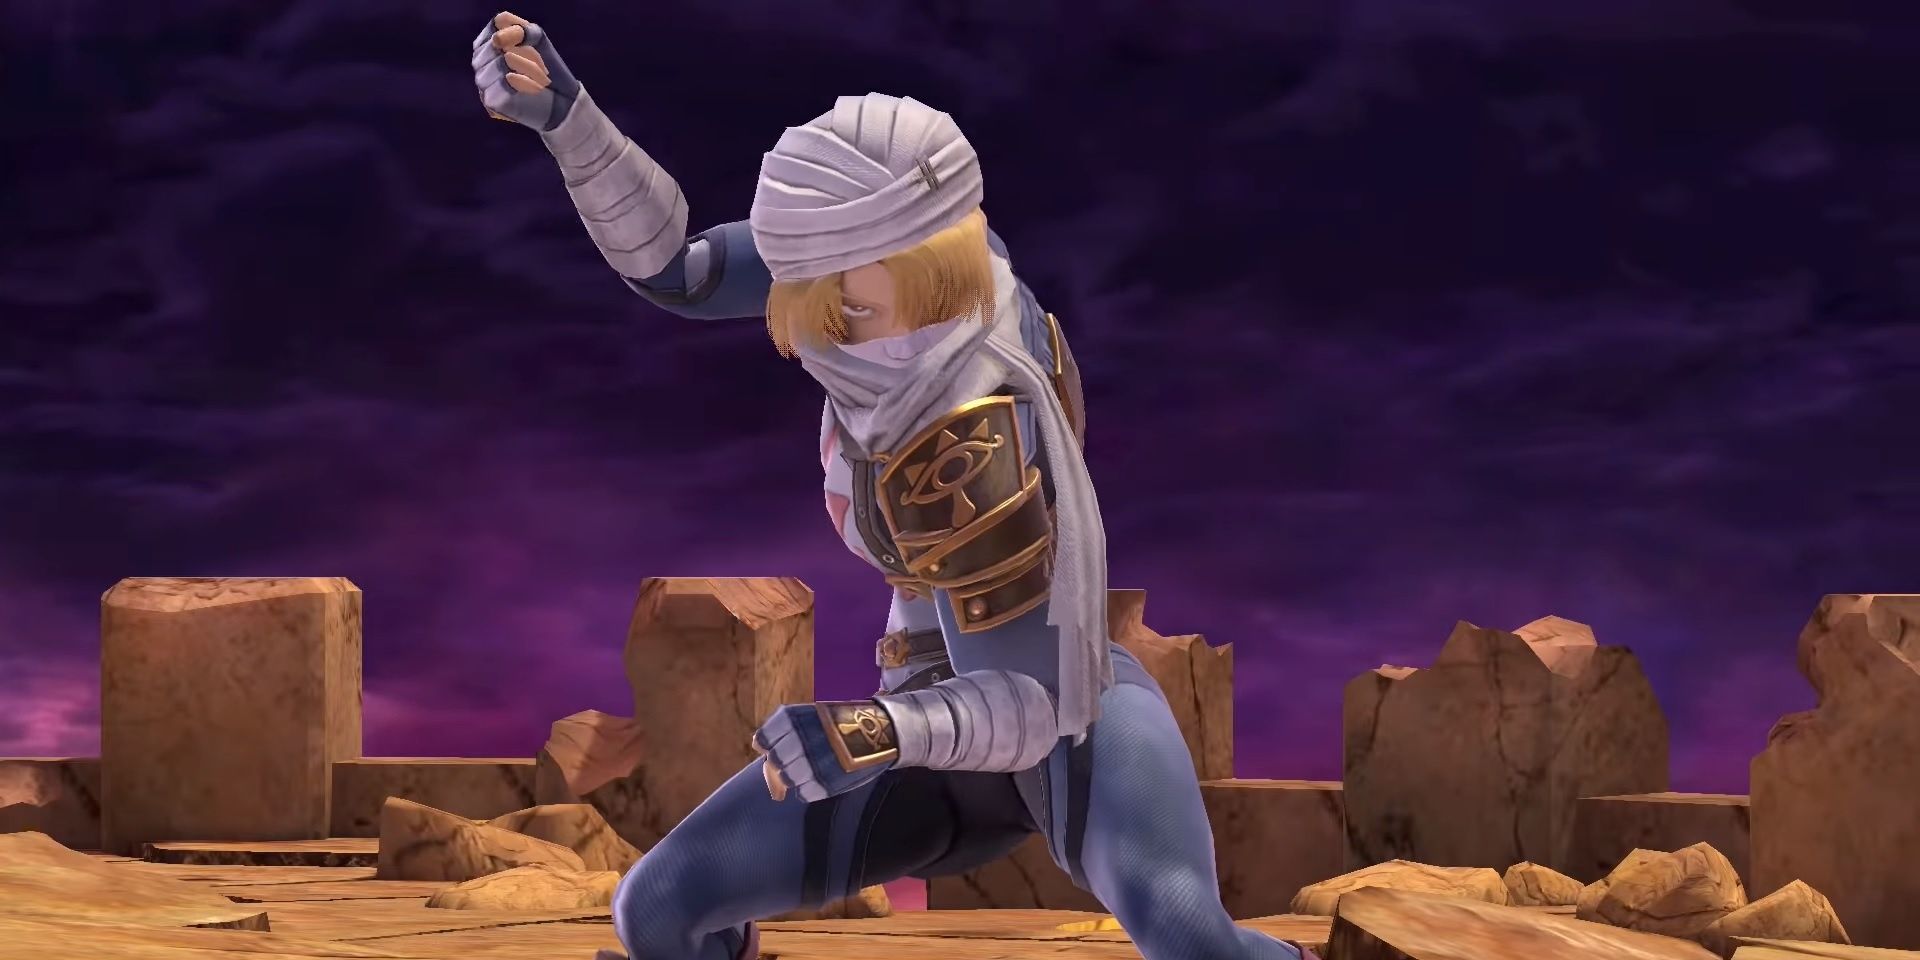 Zelda as Sheik in Super Smash Bros. Ultimate